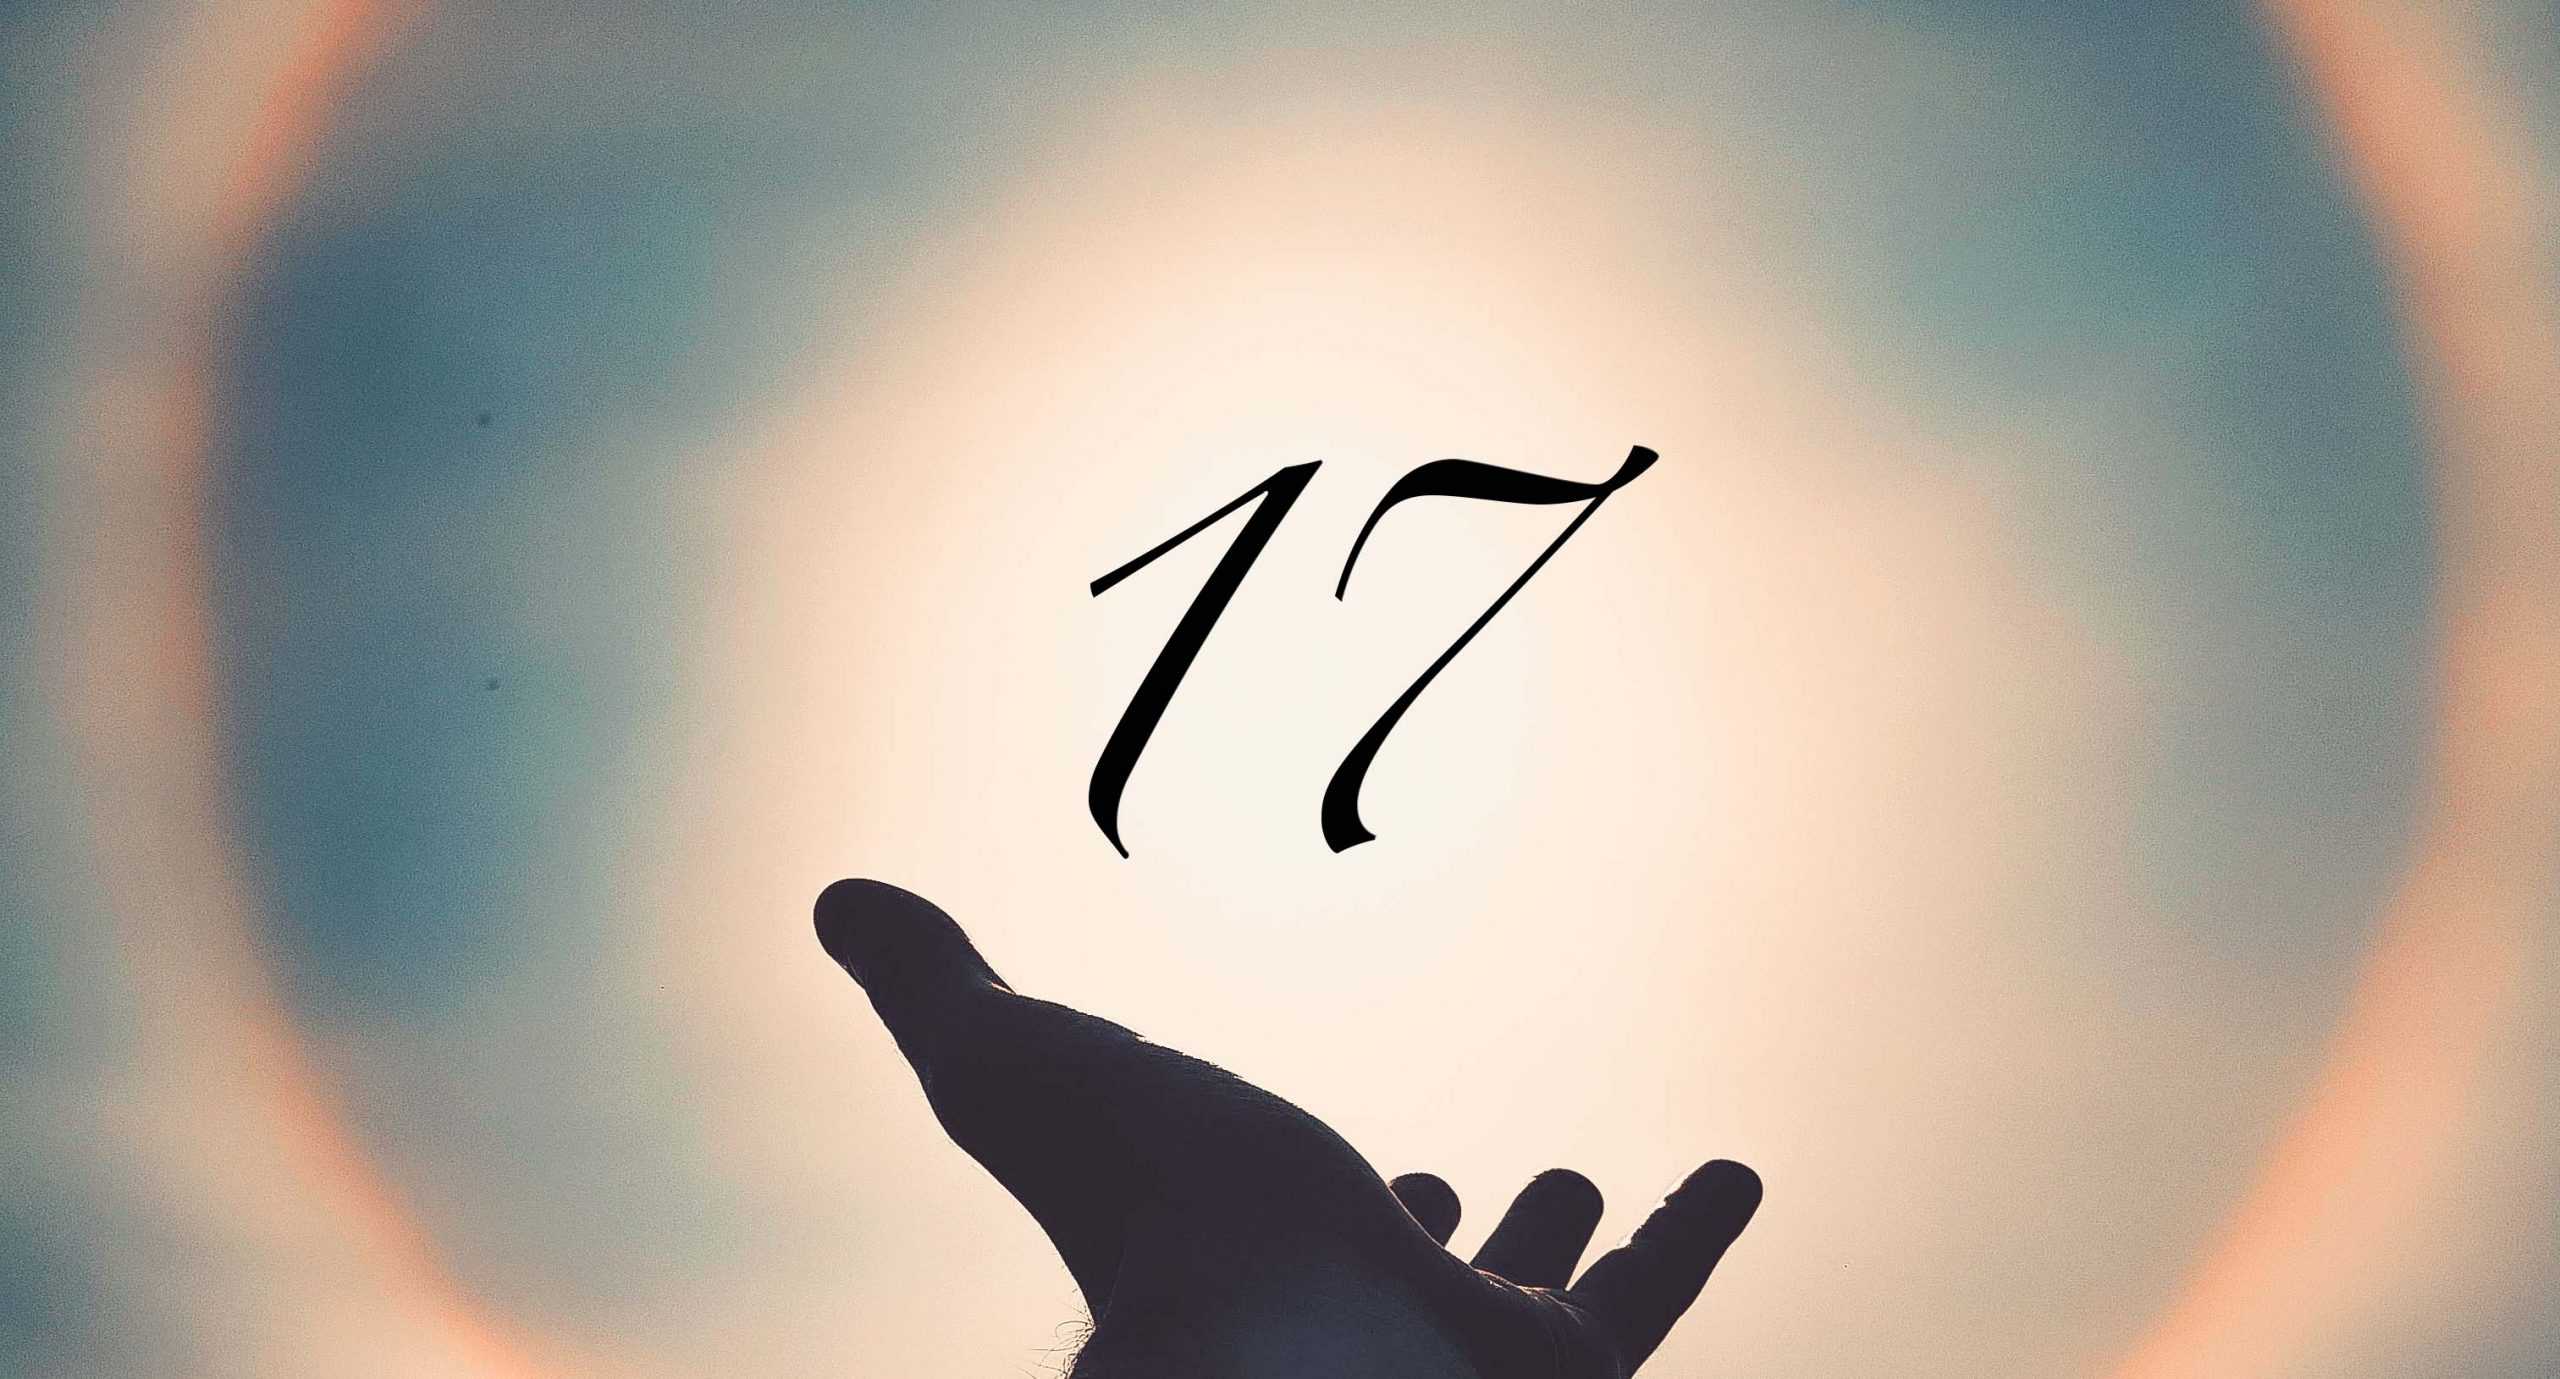 Signification du nombre 17